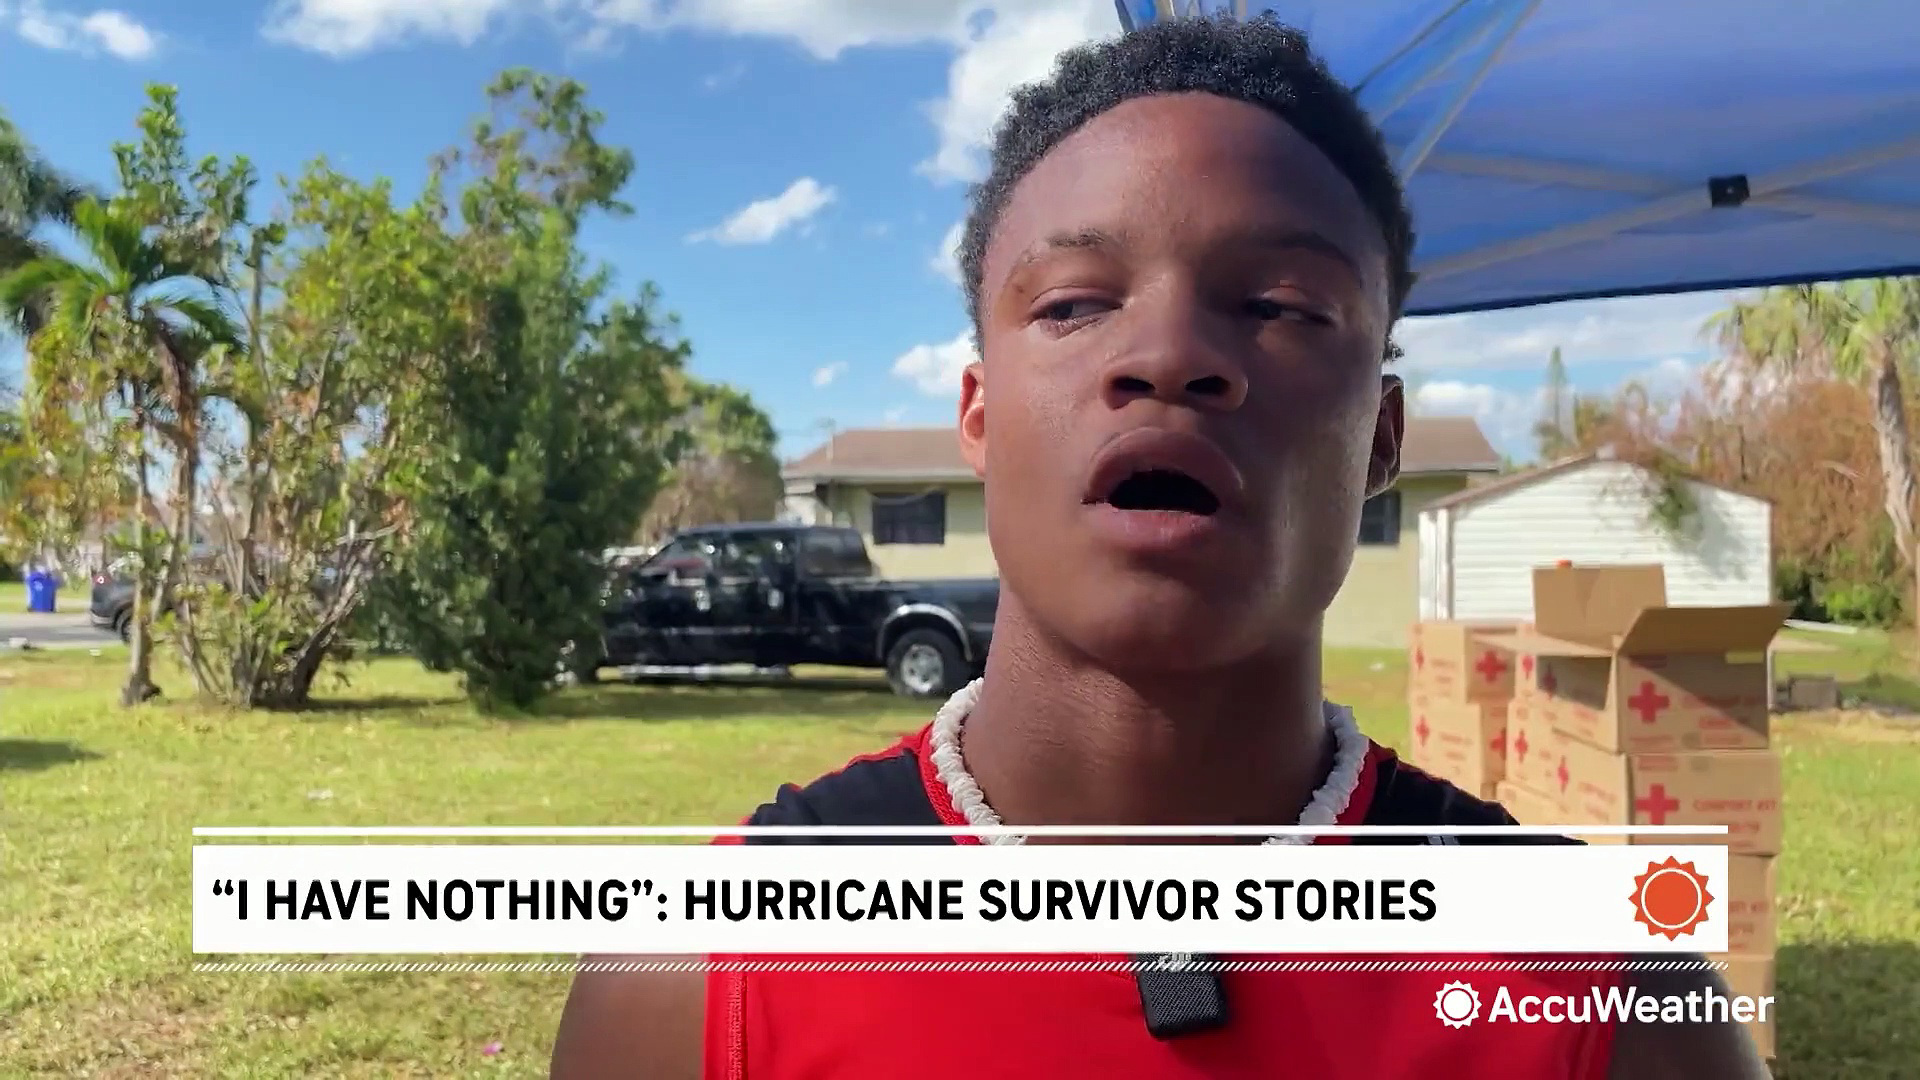 Hurricane survivor stories